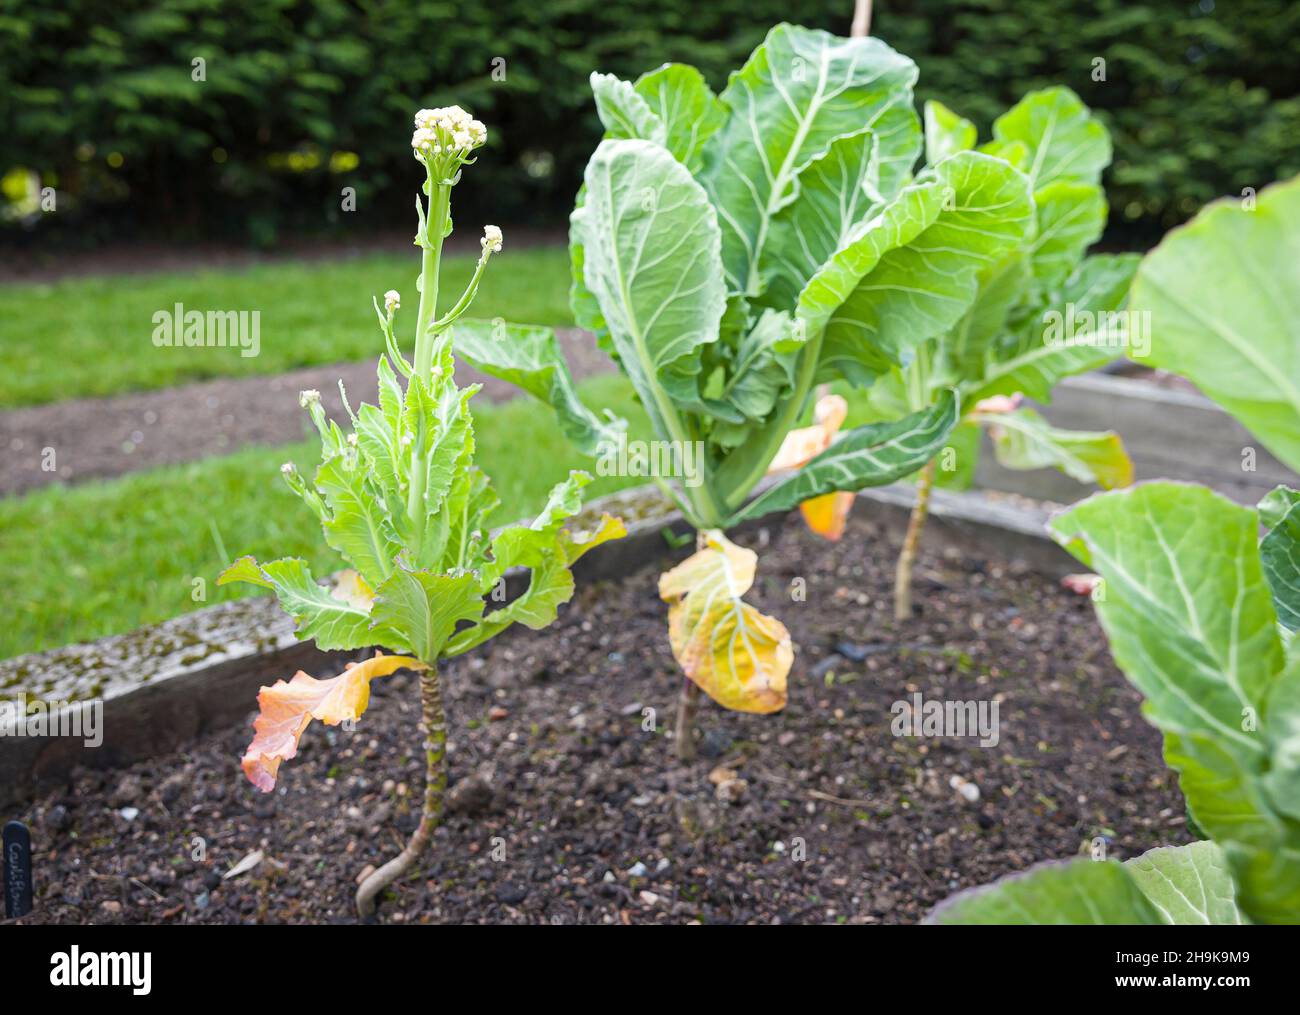 Fehlgeschlagene Blumenkohl (blinde Knospe), die in einem Garten wachsen. Ausfall von Gemüse oder Pflanzen, Großbritannien Stockfoto